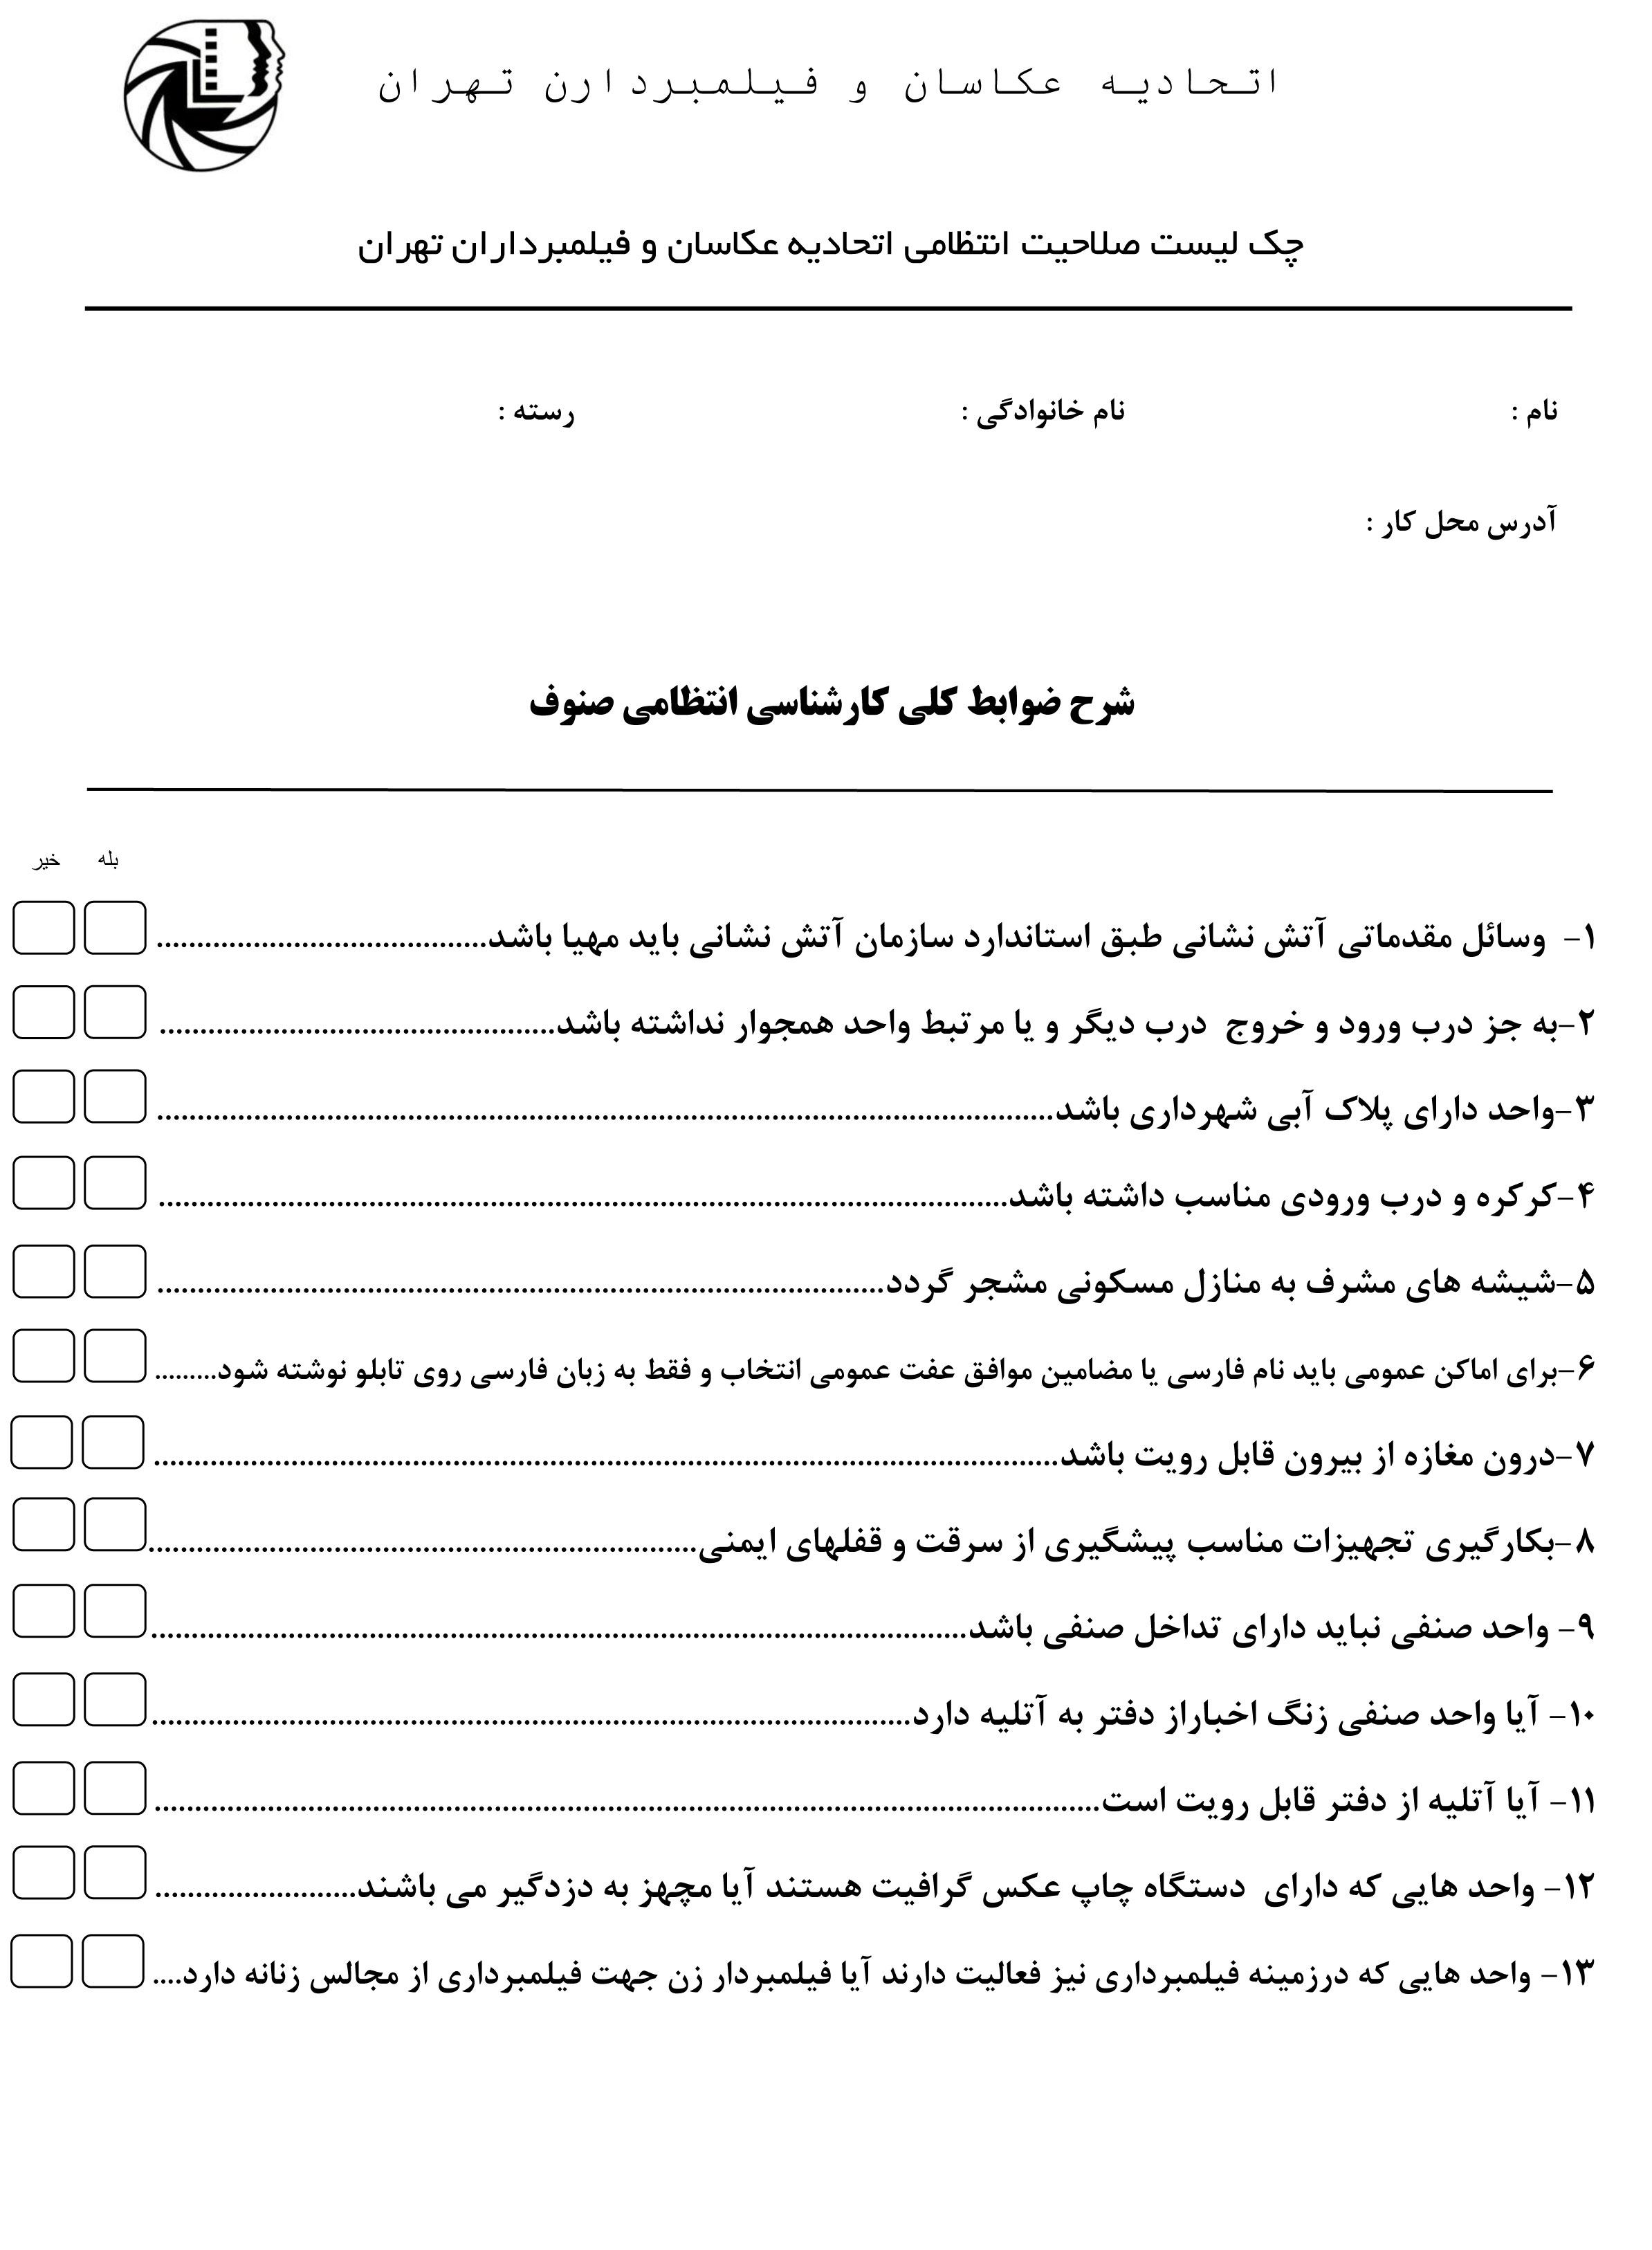 فرم شرح لیست صلاحیت انتظامی واحد صنفی اتحادیه عکاسان و فیلمبرداران تهران